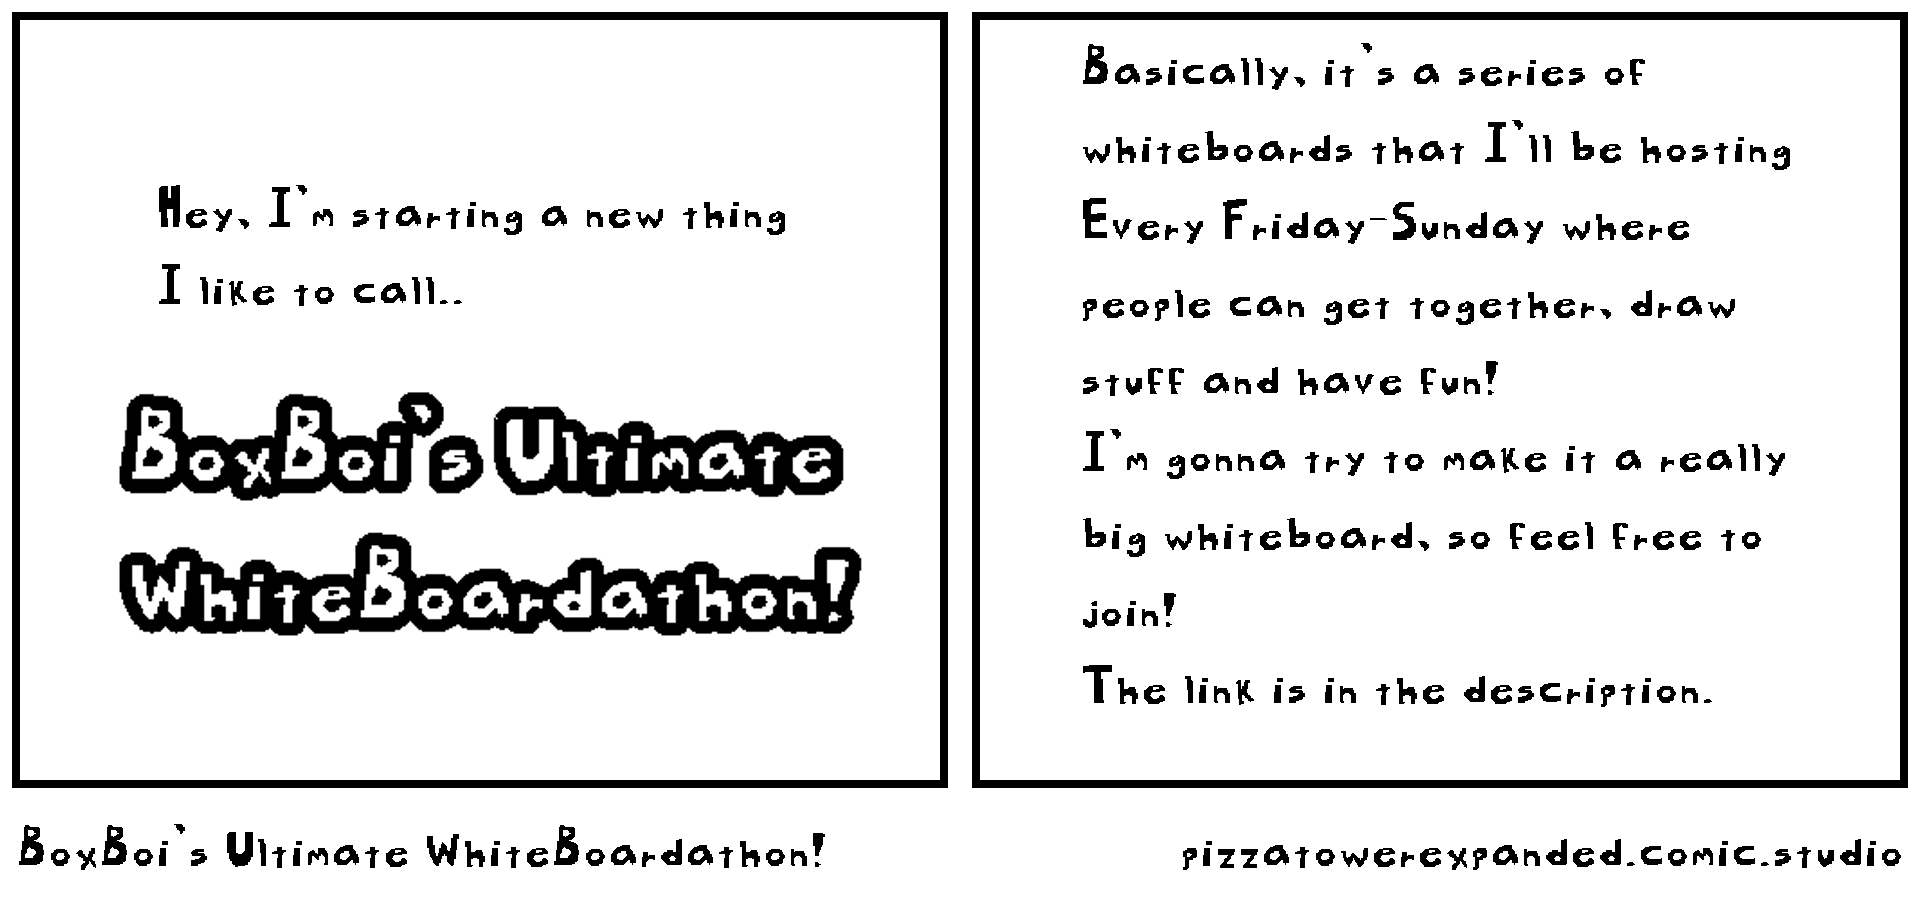 BoxBoi's Ultimate WhiteBoardathon!